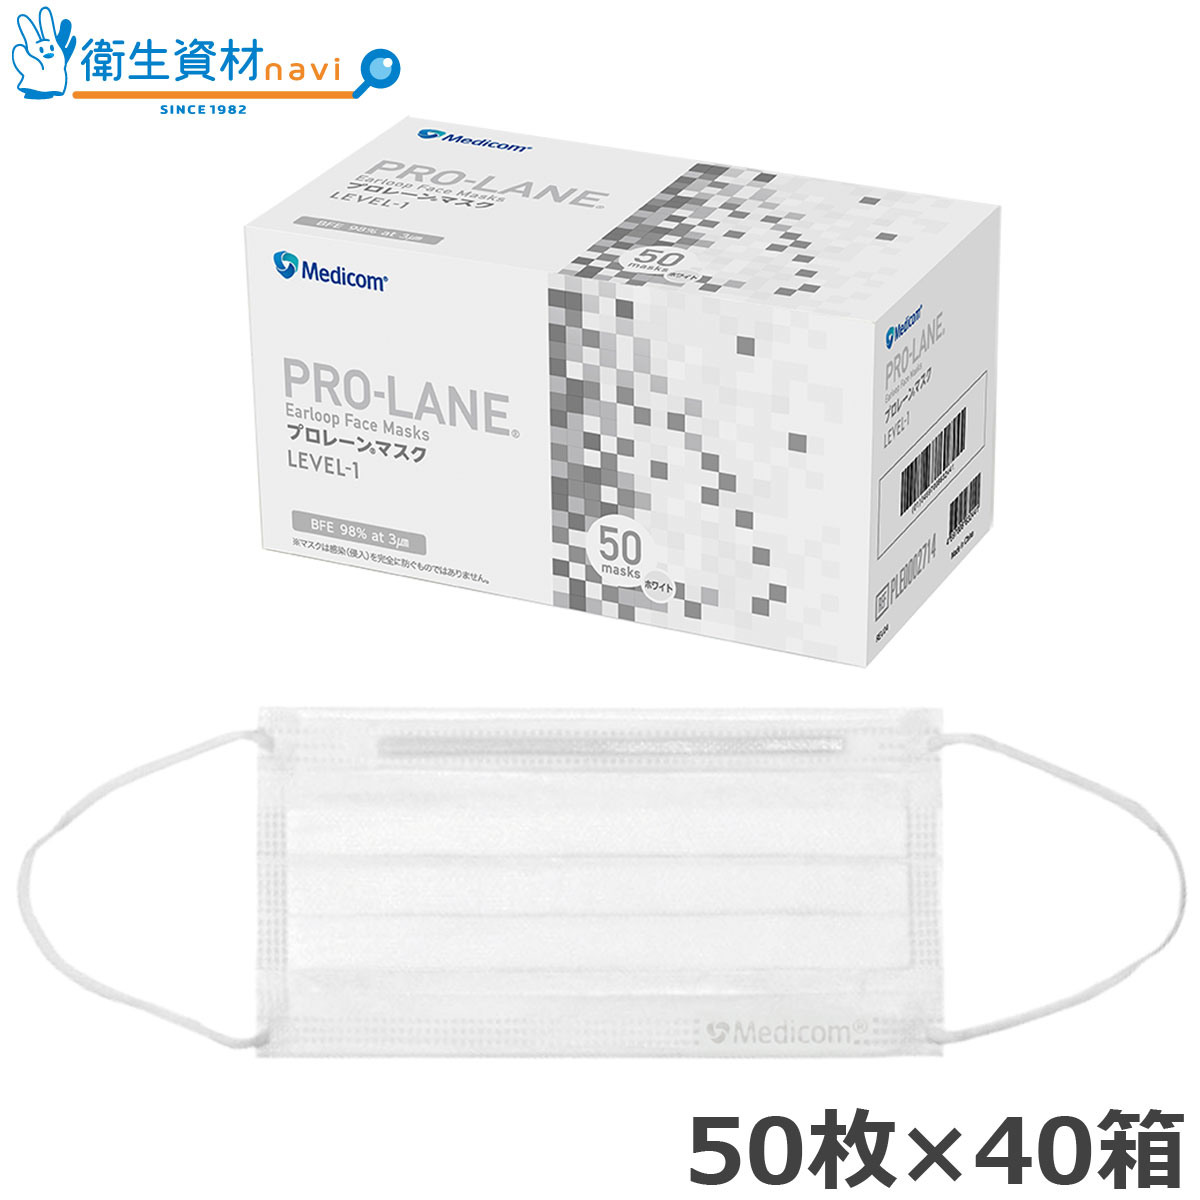 PRO-LANE(プロレーン) マスク LEVEL-1 ホワイト レギュラーサイズ PLE0002714 (2,000枚)